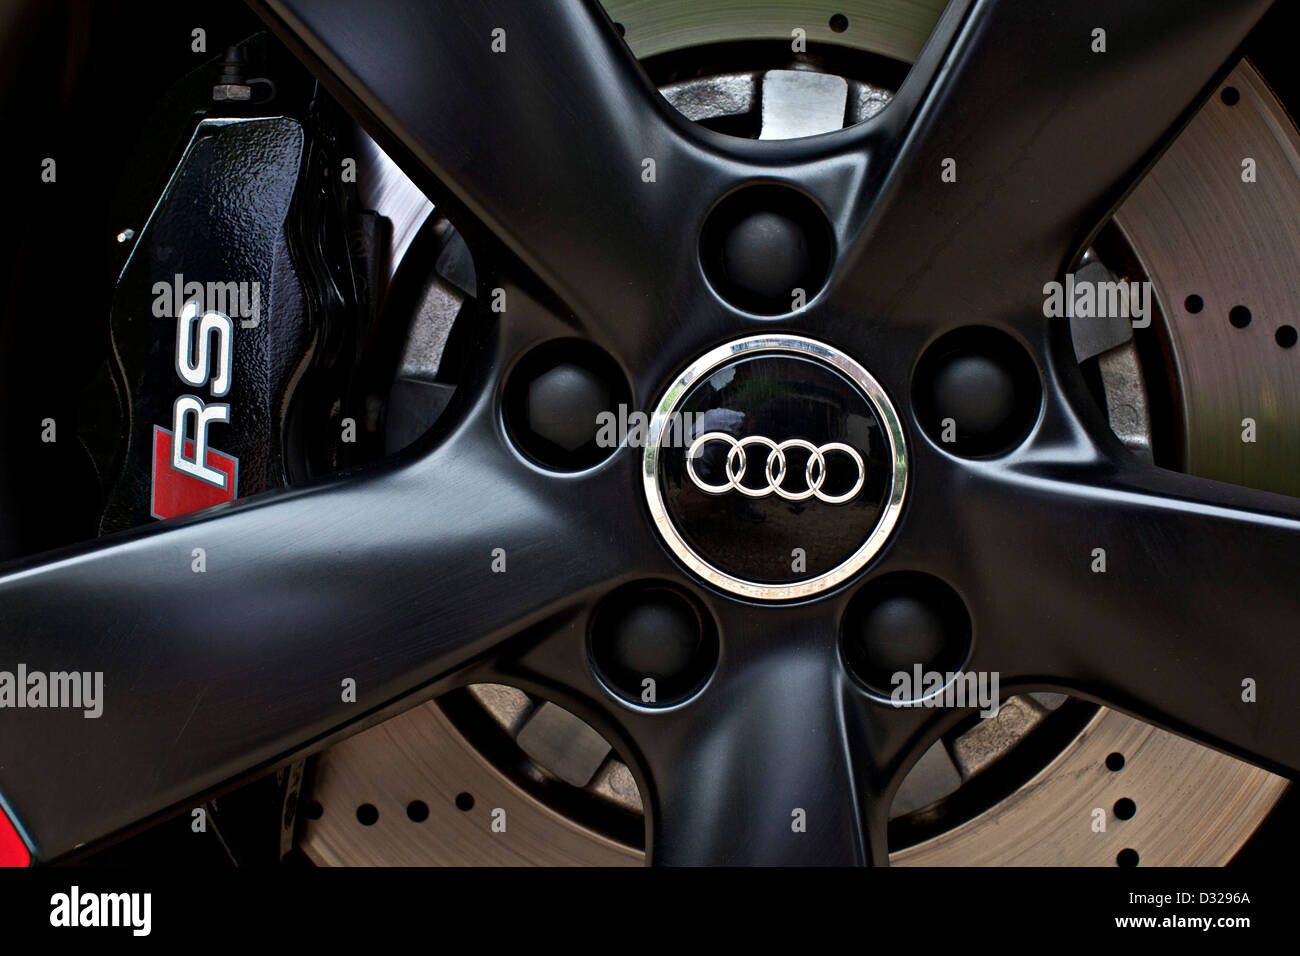 Moyeu de roue noir avec logo sur l'Audi RS 3, Winchester, England, UK Banque D'Images